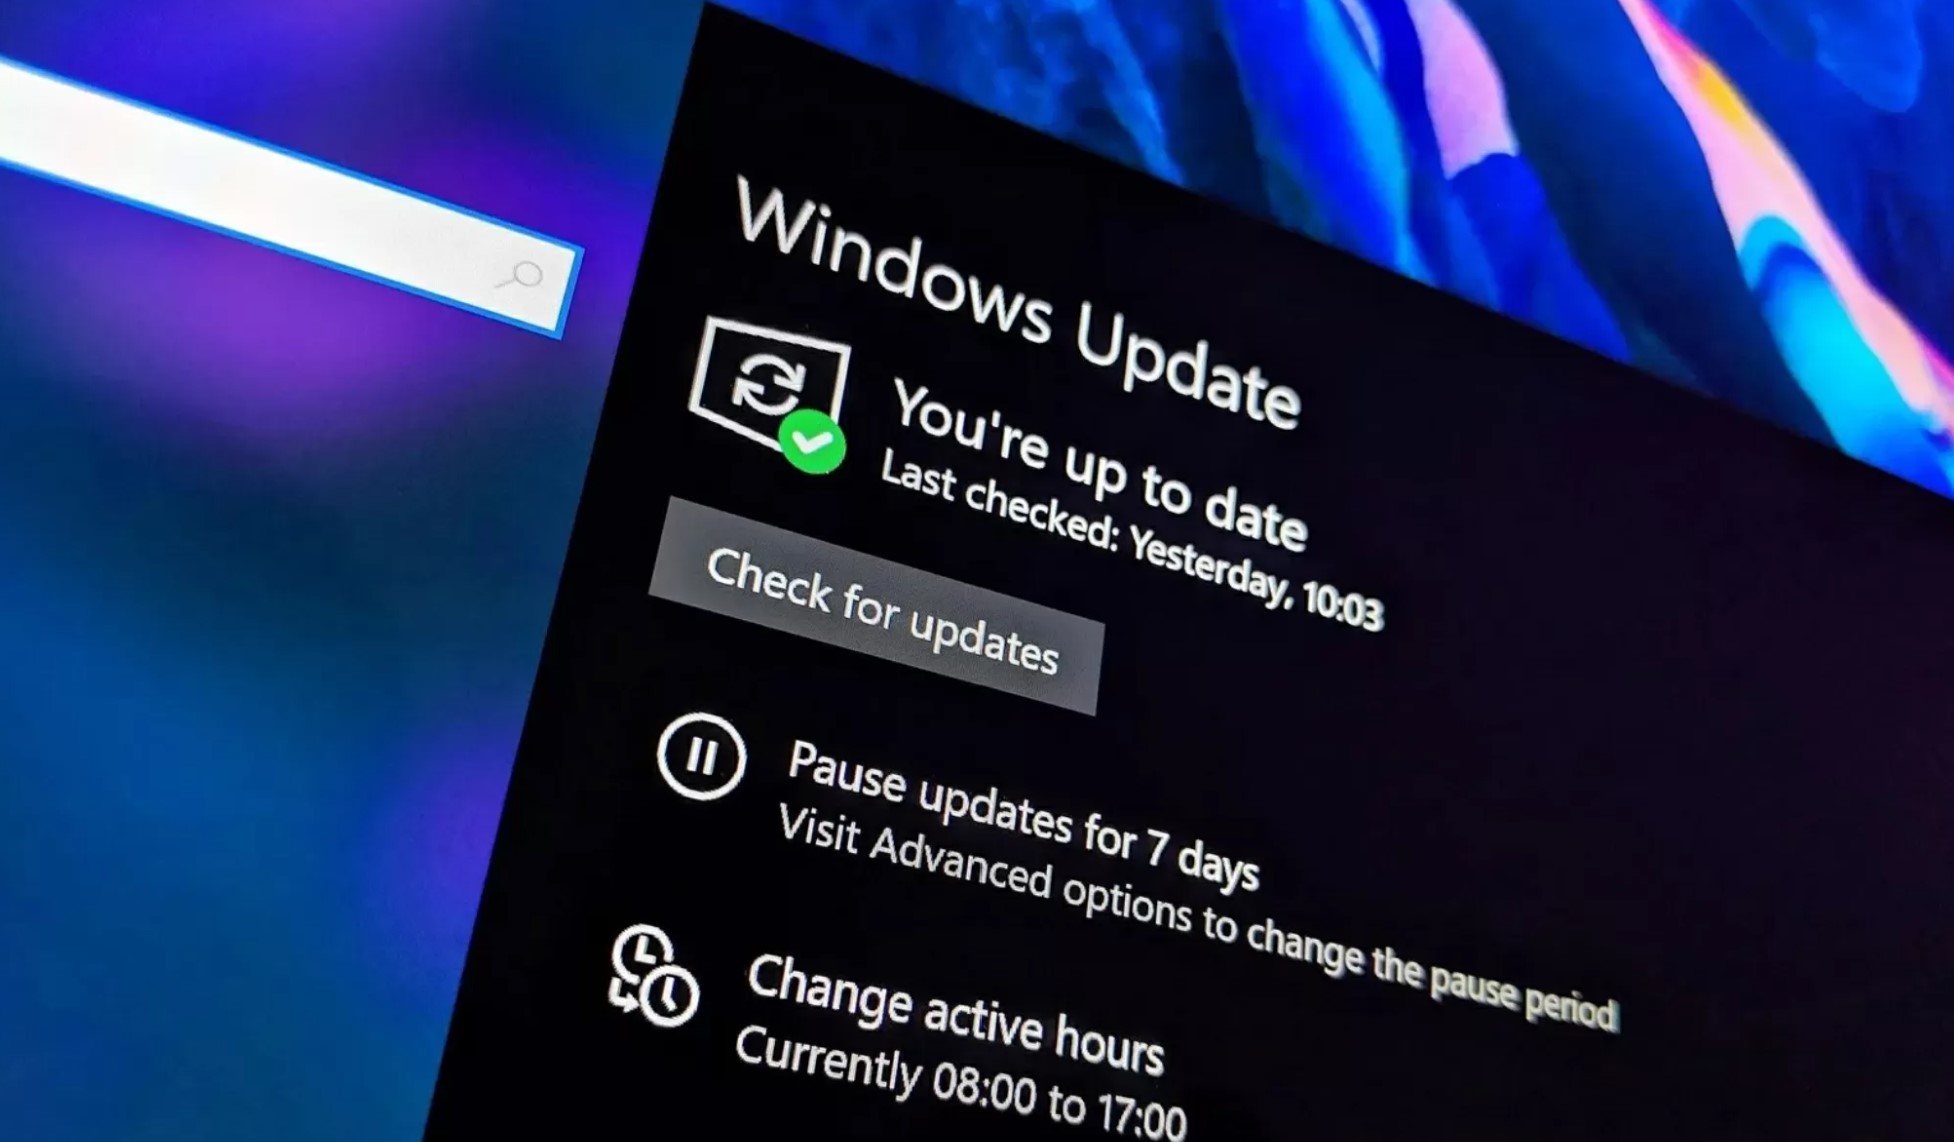 Microsoft tung tin vui cho người dùng Windows 10, ngay lúc sắp ngừng hỗ trợ- Ảnh 1.